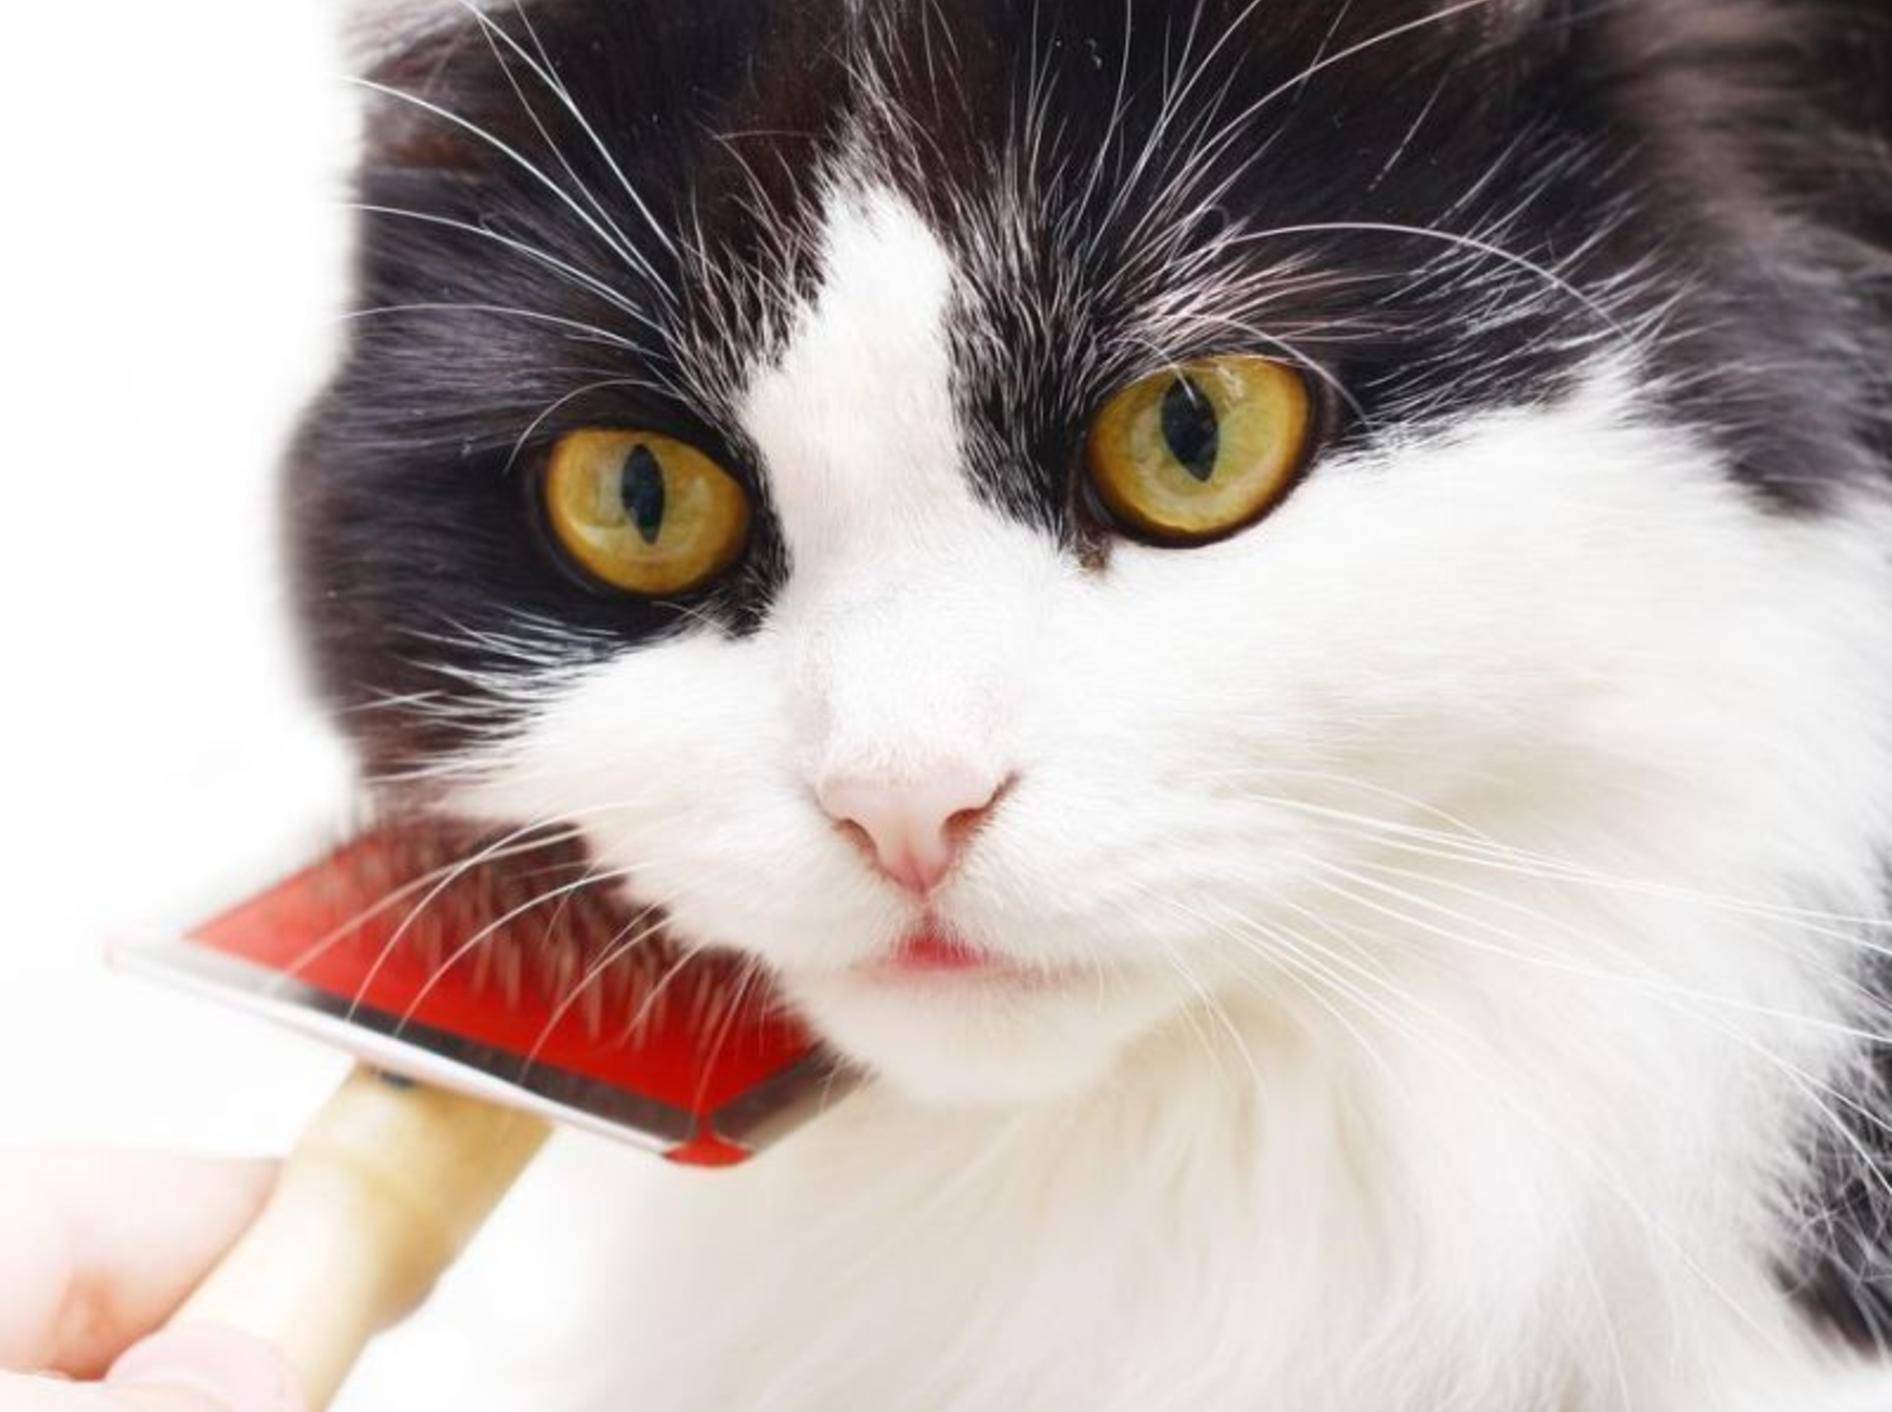 Nicht für jede Katze ist Kämmen oder Bürsten eine Freude – Foto: Shutterstock / mariait